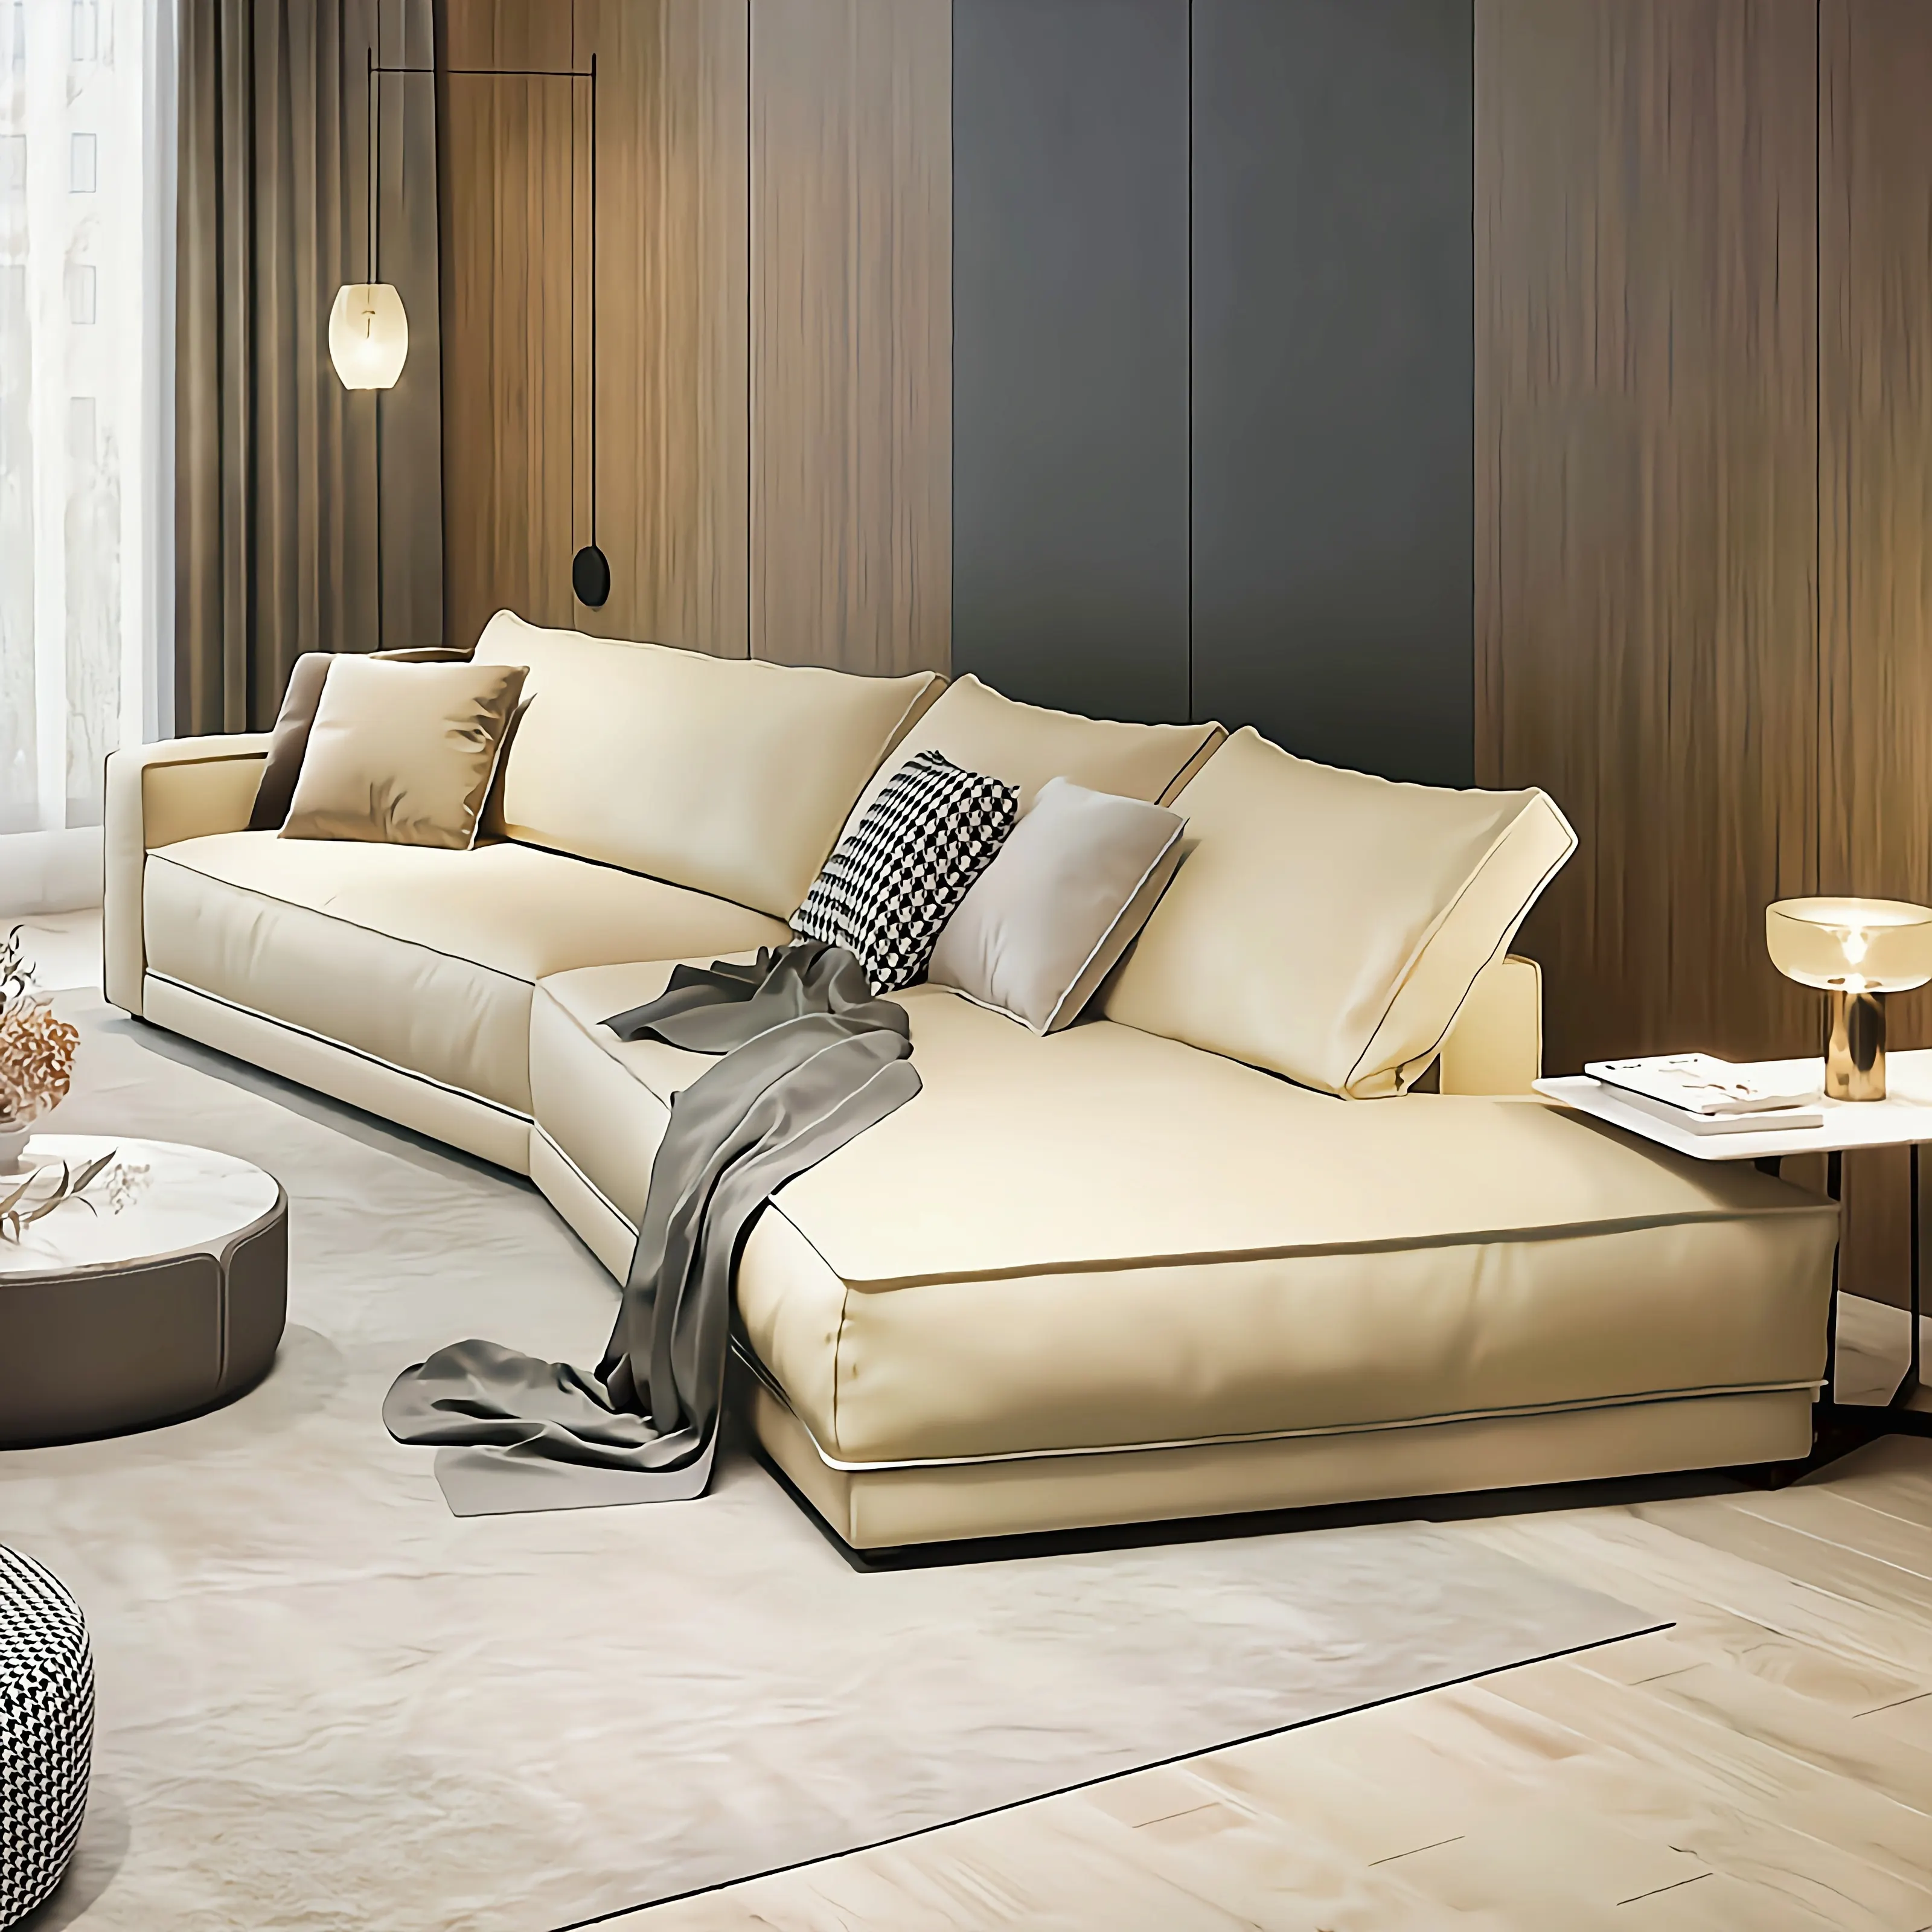 Furnitur rumah komersial Sofa gaya Eropa Set Sofa ruang tamu warna khusus merah kain beludru berbentuk L